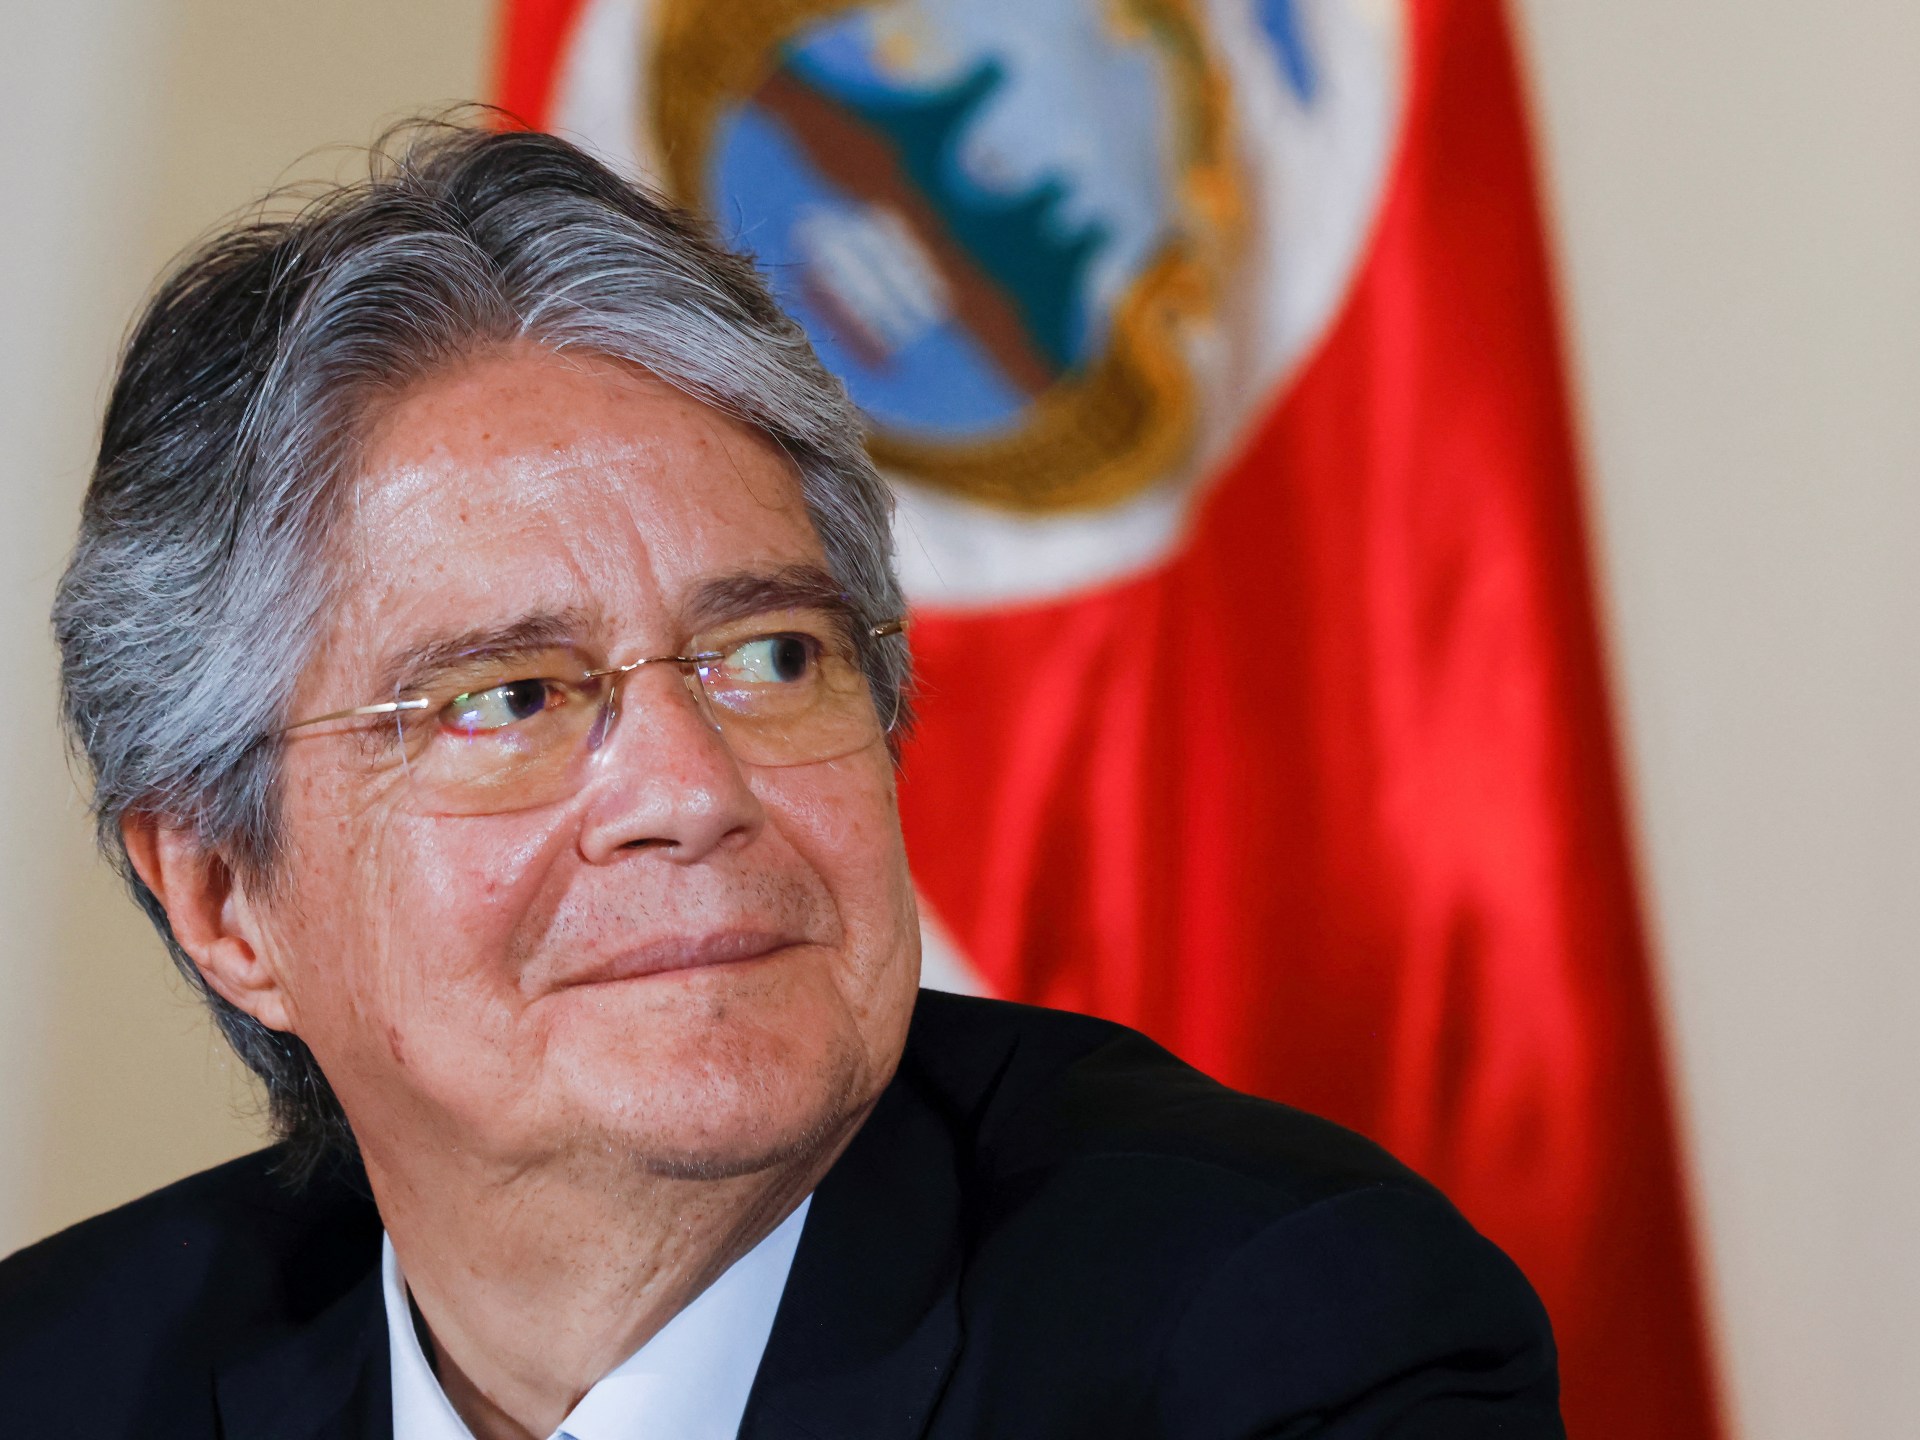 Presiden Ekuador membubarkan badan legislatif dan mengajukan pemungutan suara |  Berita Politik